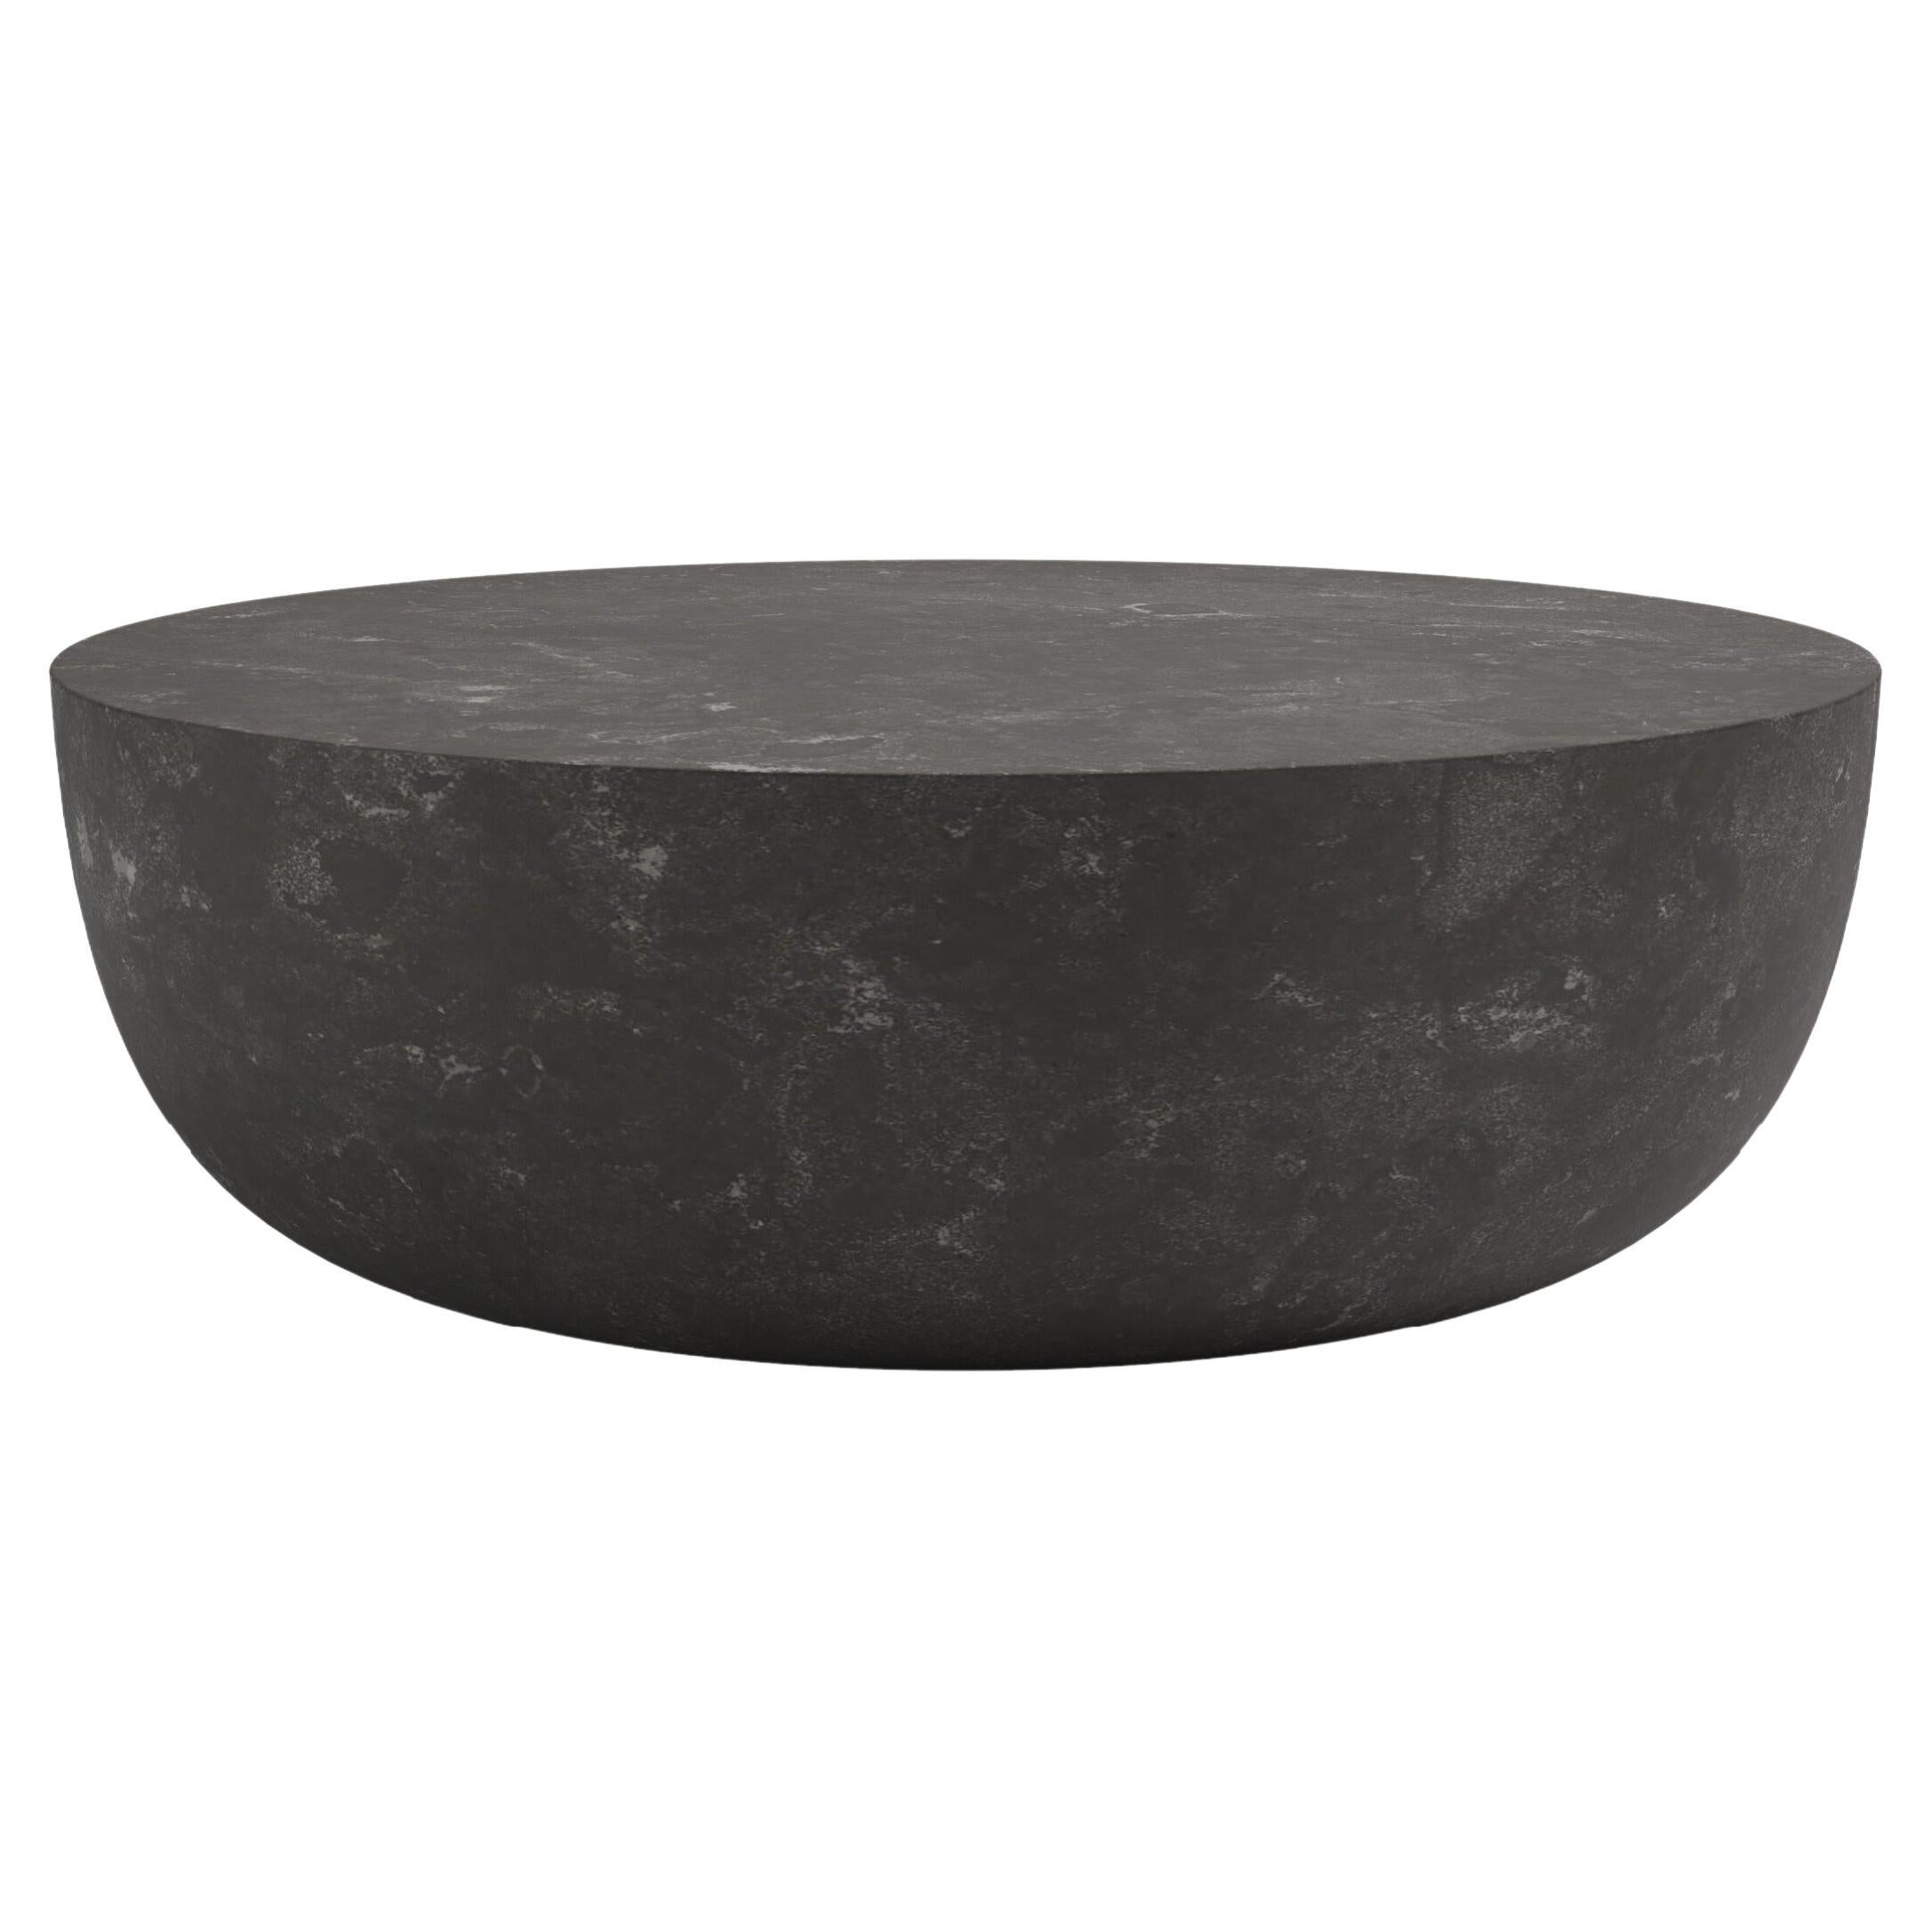 FORM(LA) Sfera Round Coffee Table 54”L x 54”W x 16”H Nero Petite Granite For Sale